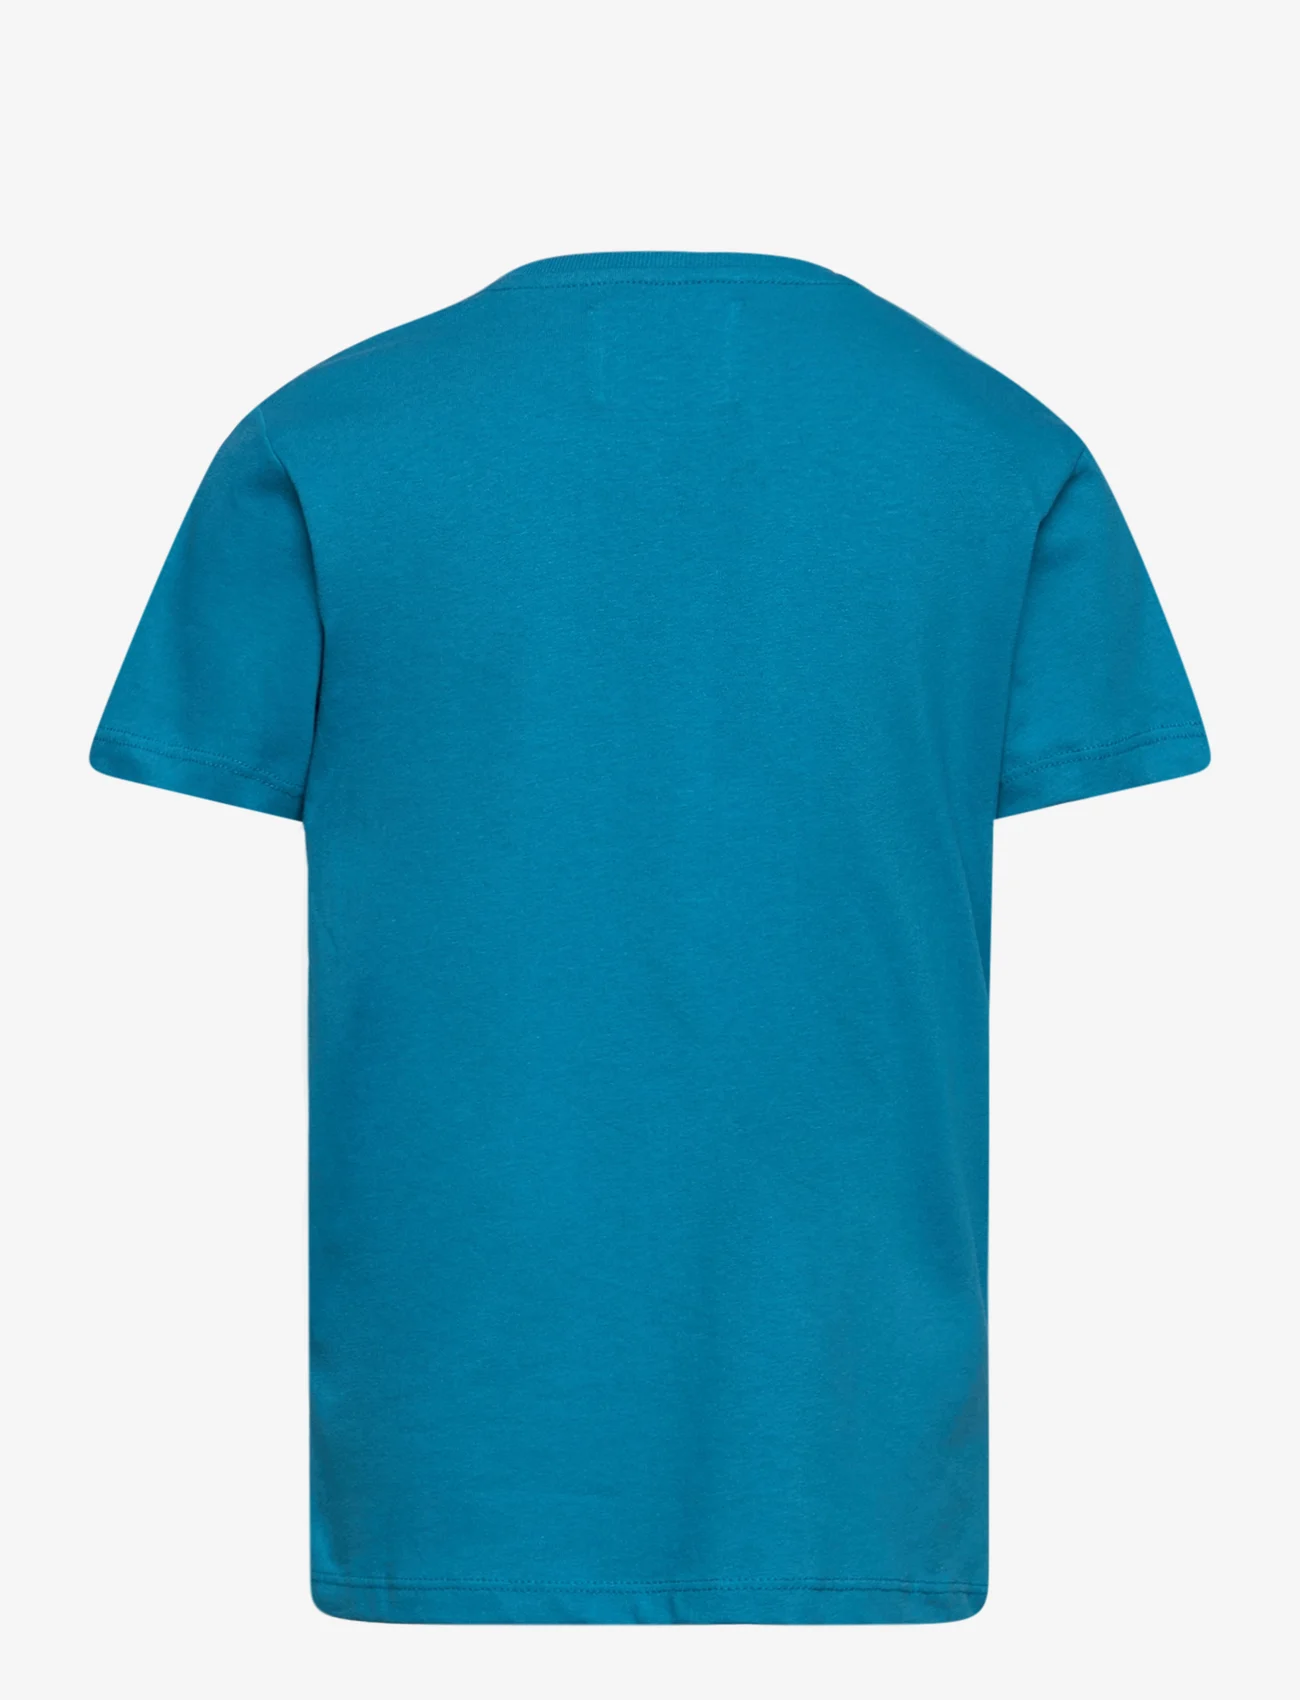 Wood Wood - Ola kids print T-shirt - kortärmade - blue - 1